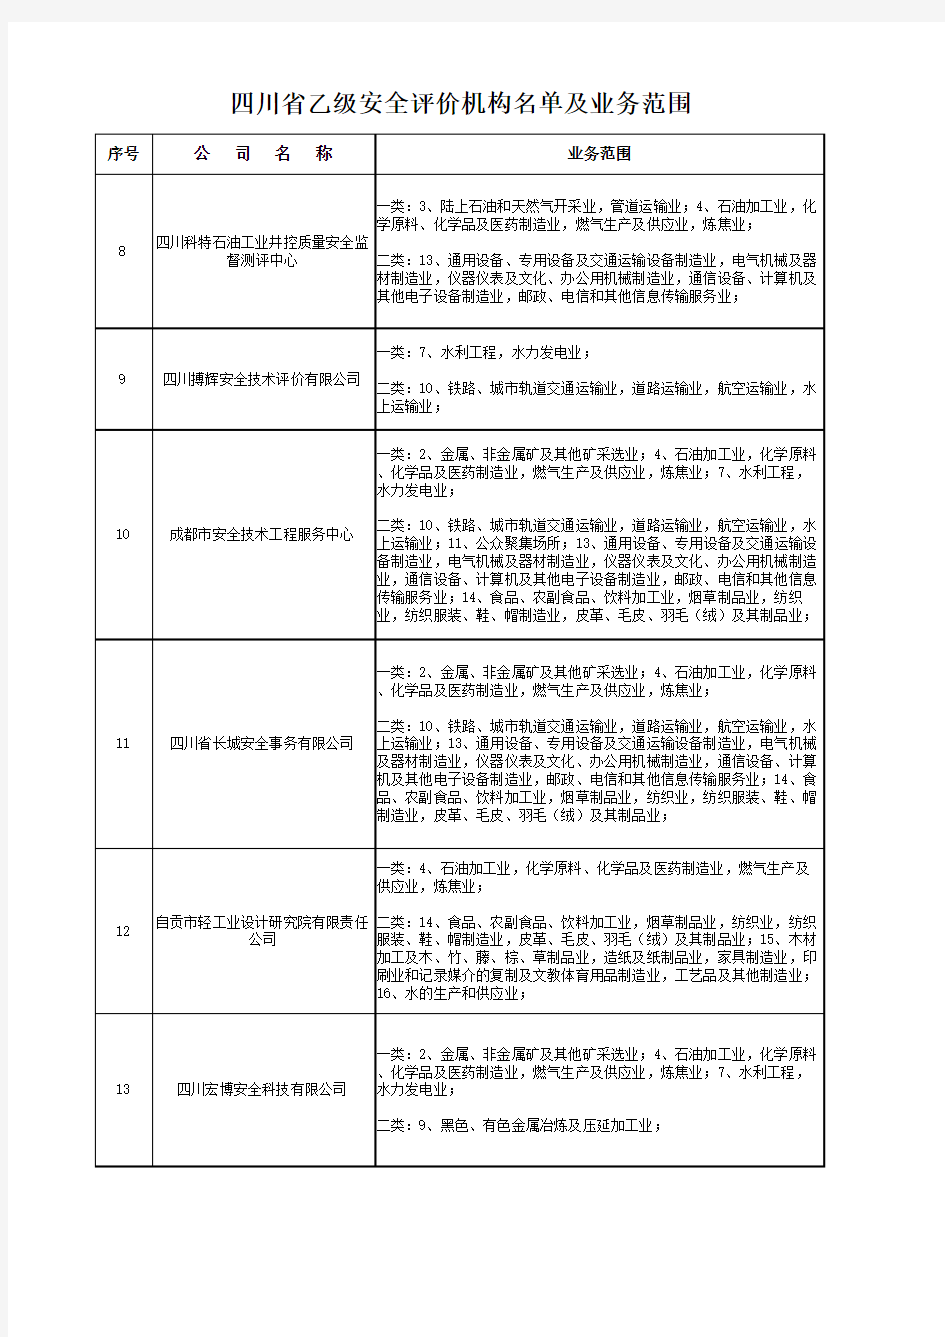 四川省乙级安全评价机构名单及业务范围